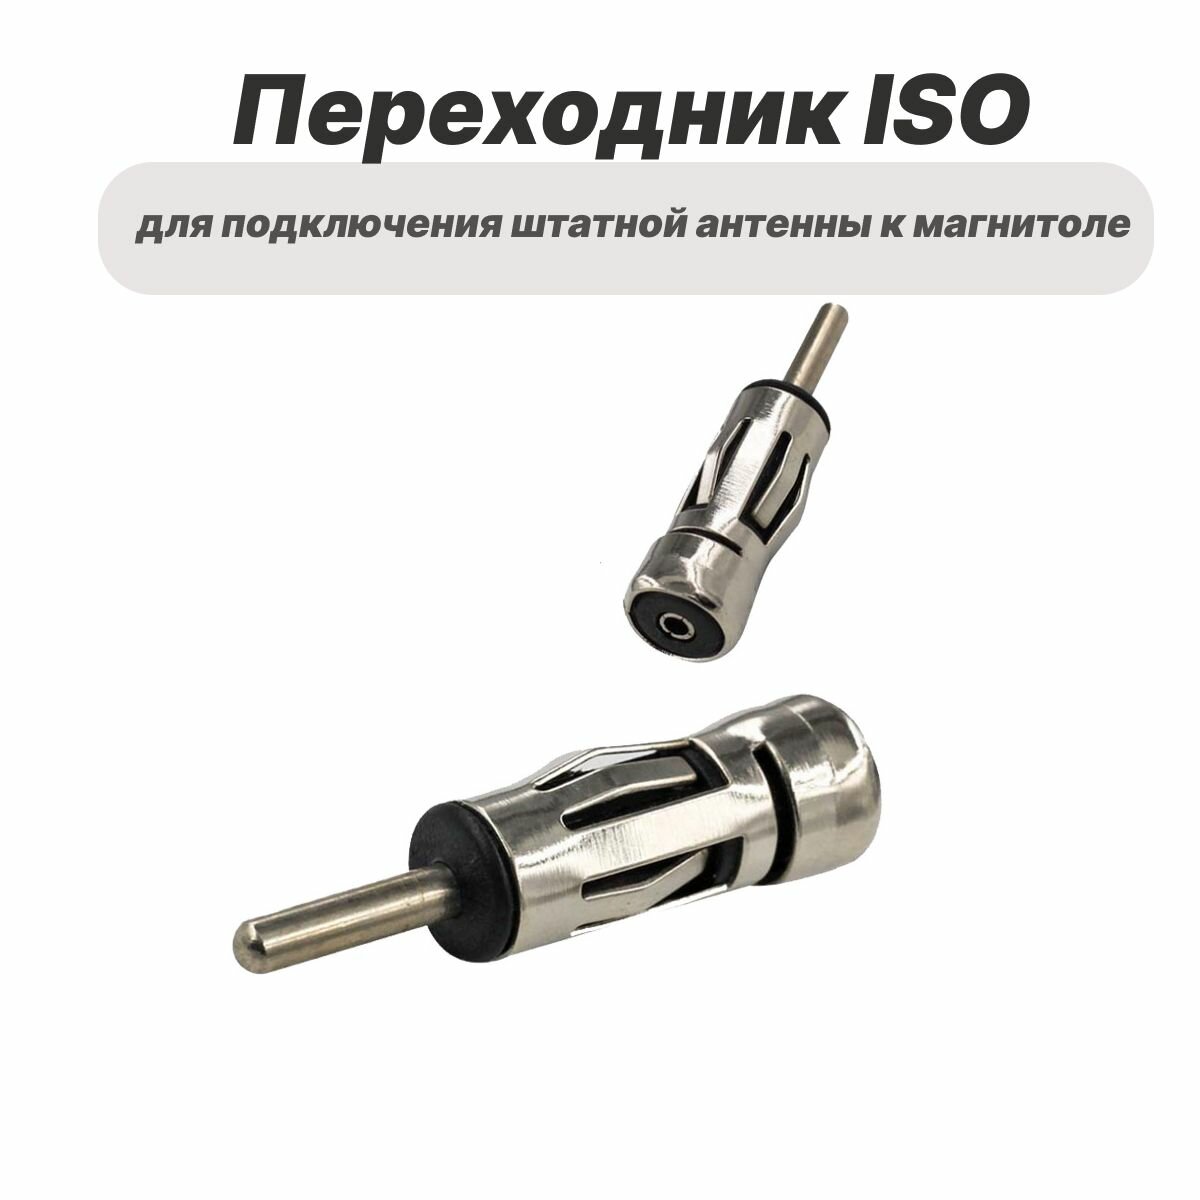 Переходник ISO для подключения штатной антенны к магнитоле ISO - DIN